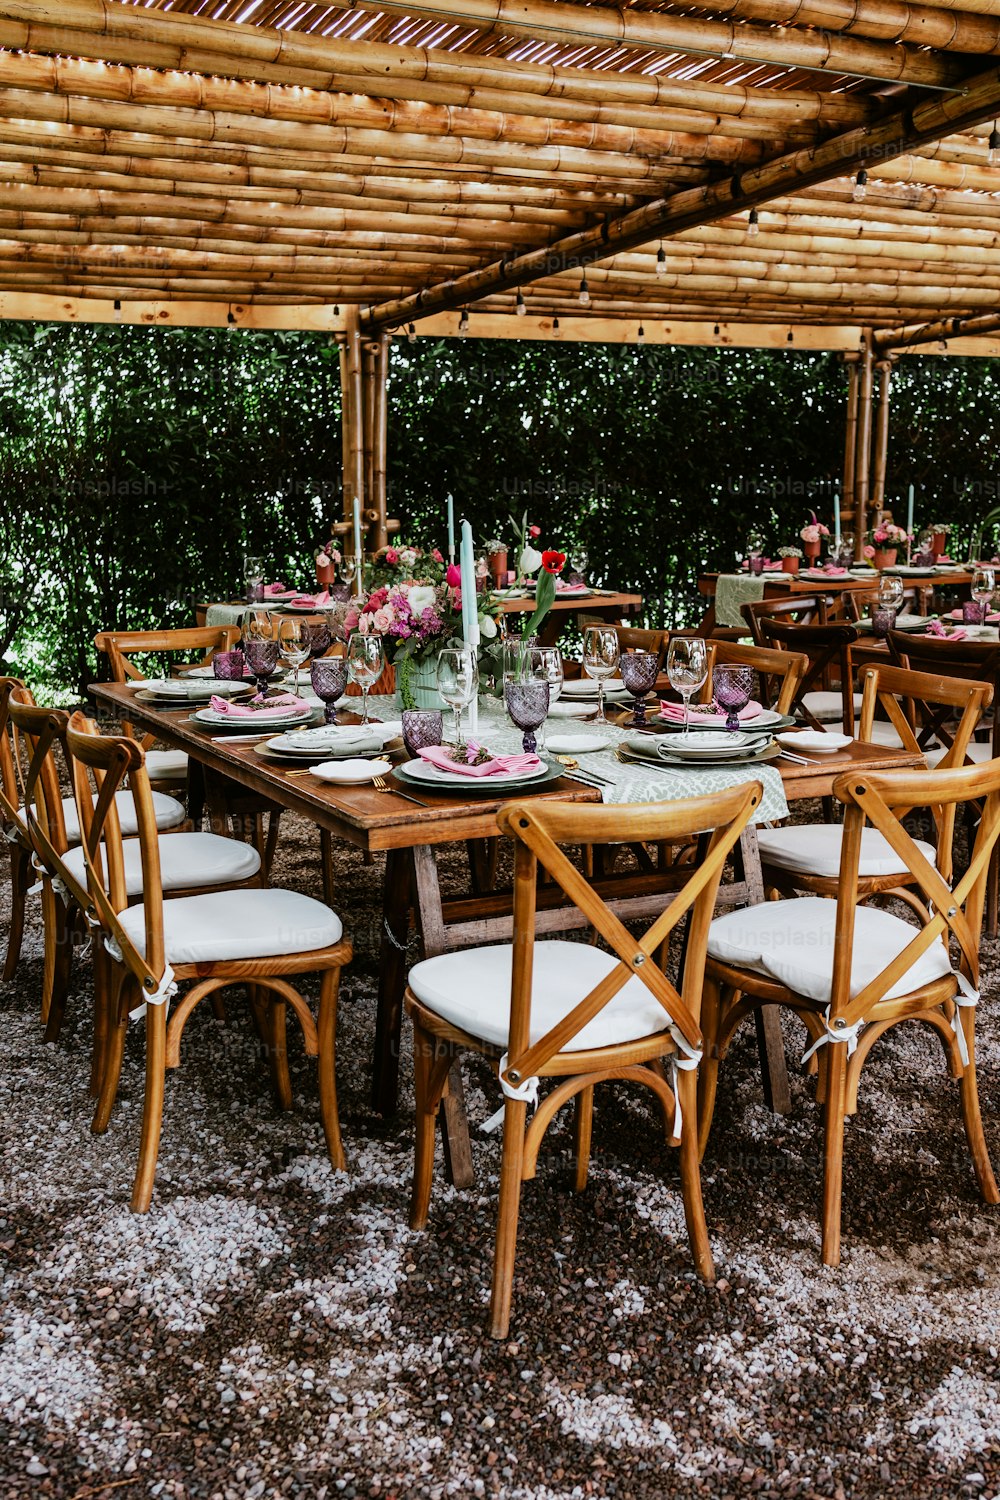 ラテンアメリカでの結婚披露宴のために飾られたテーブルの上に花と皿が置かれたテーブルのあるテラス